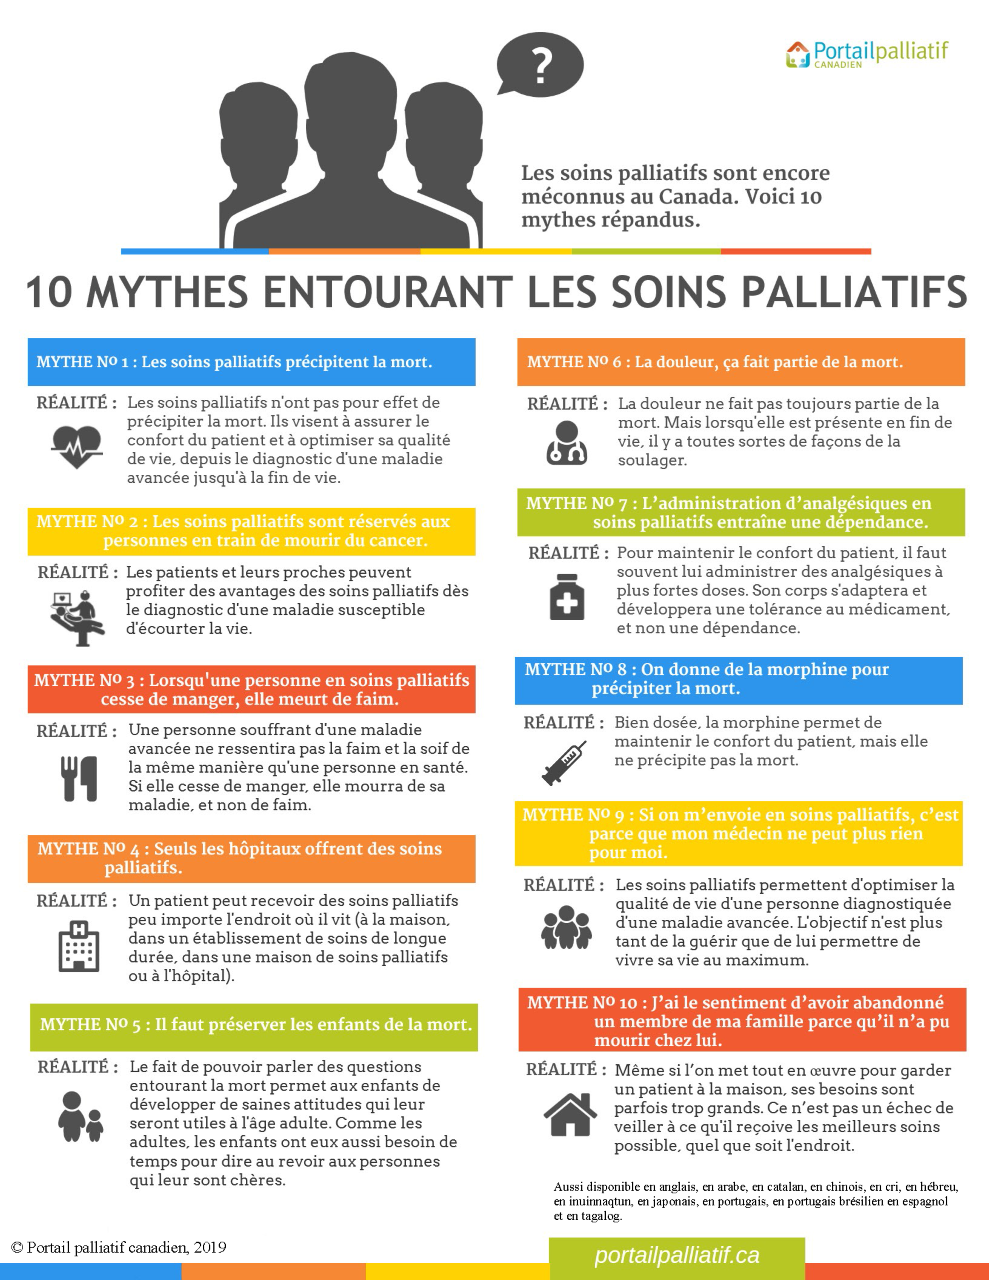 Résumé graphique des 10 mythes des soins palliatifs